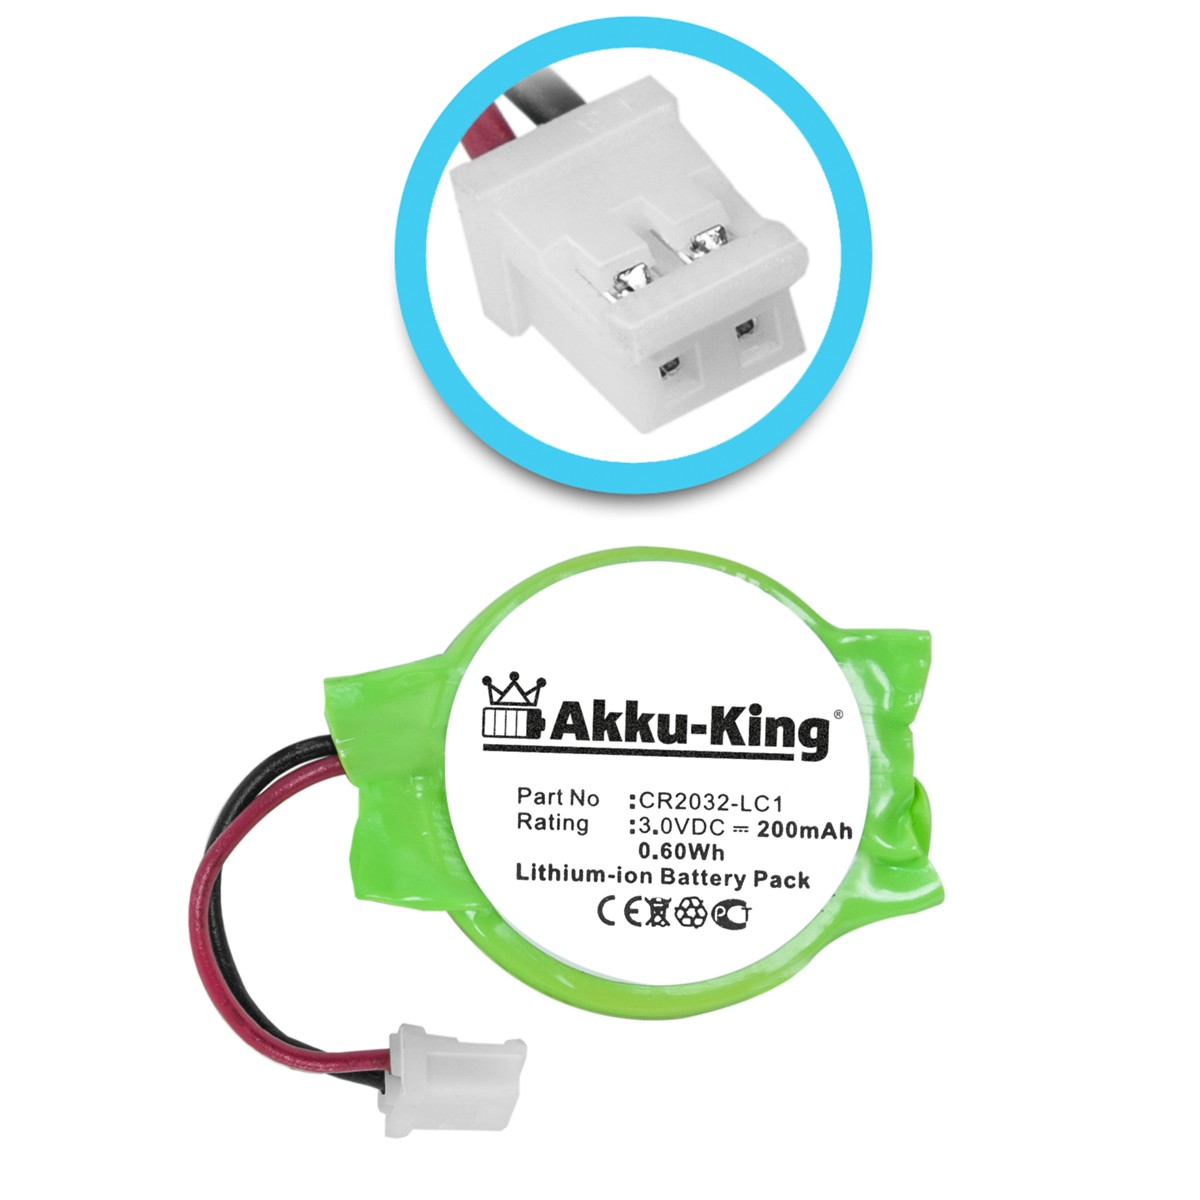 AKKU-KING Akku Sony 3.0 Li-Ion Geräte-Akku, kompatibel 200mAh CR2032-LC1 Volt, mit